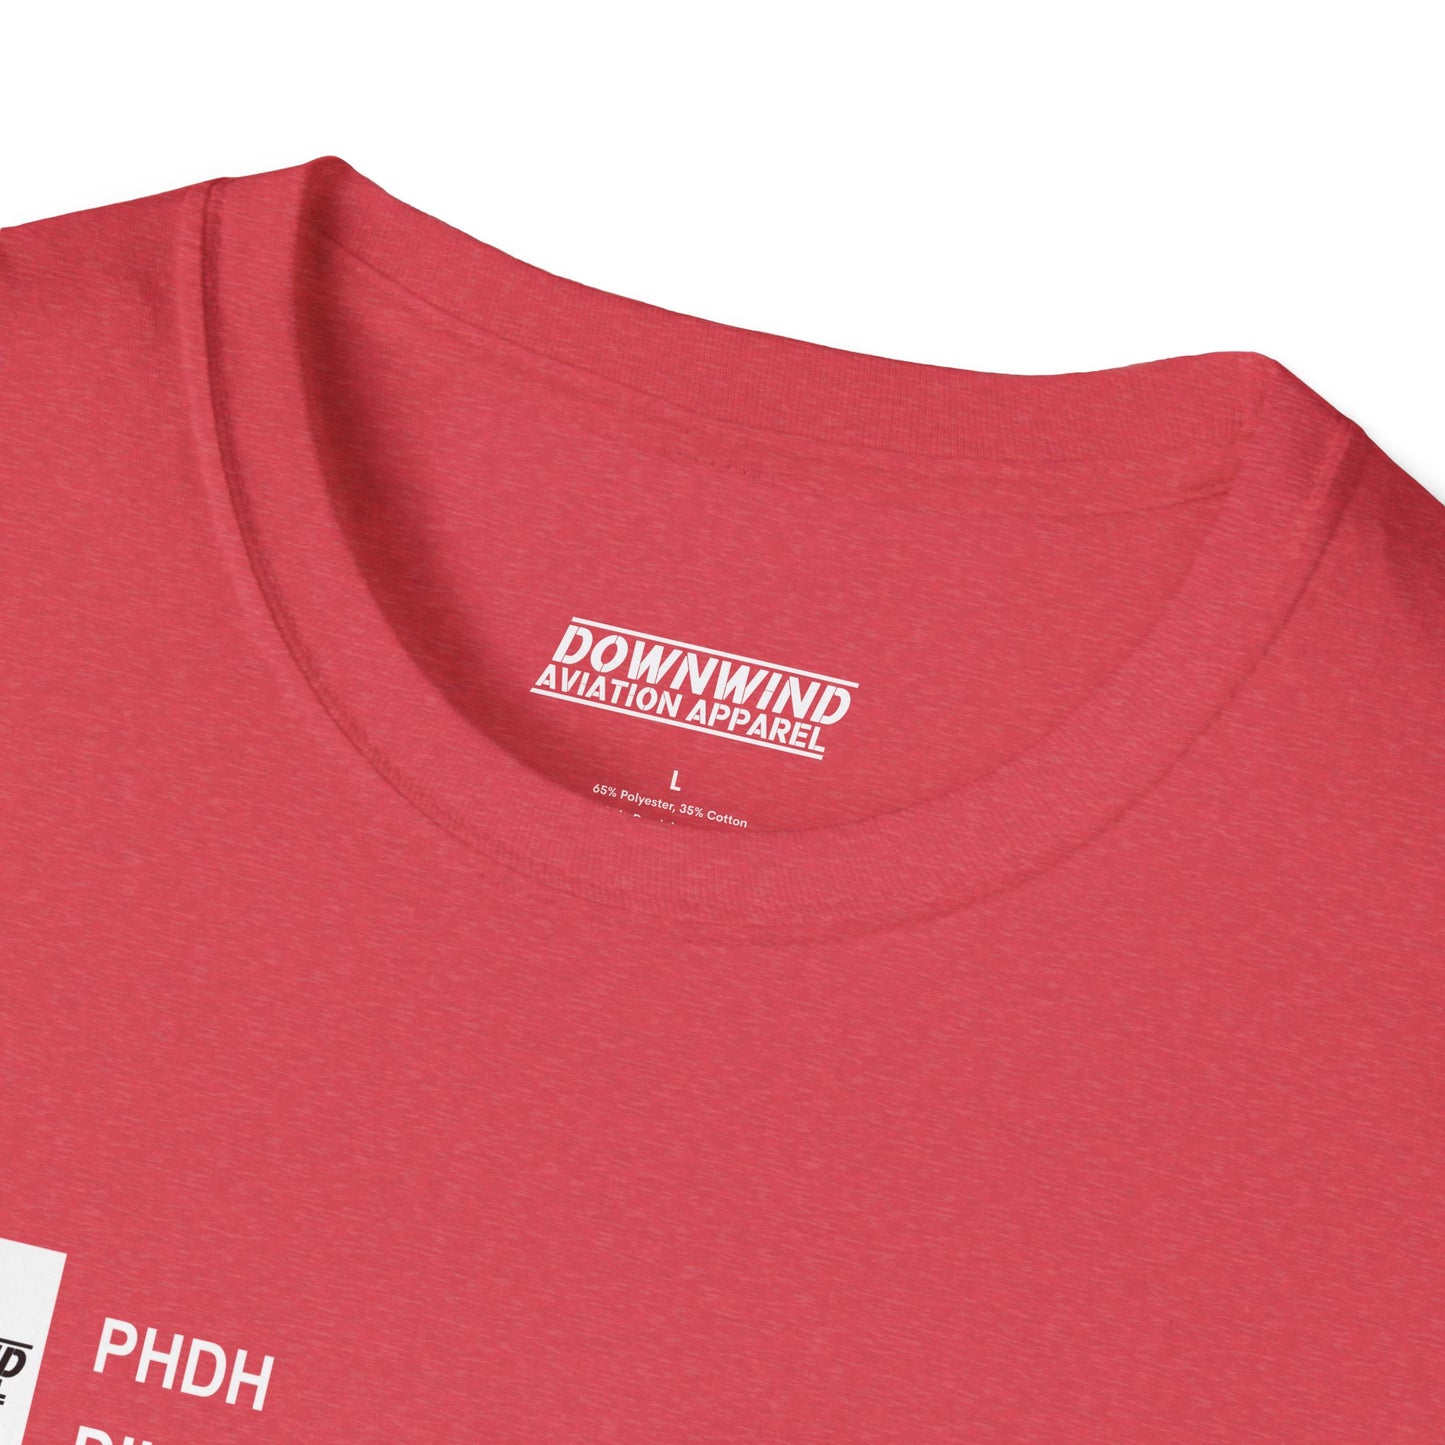 PHDH / Dillingham Kawaihapai Air Field T-Shirt